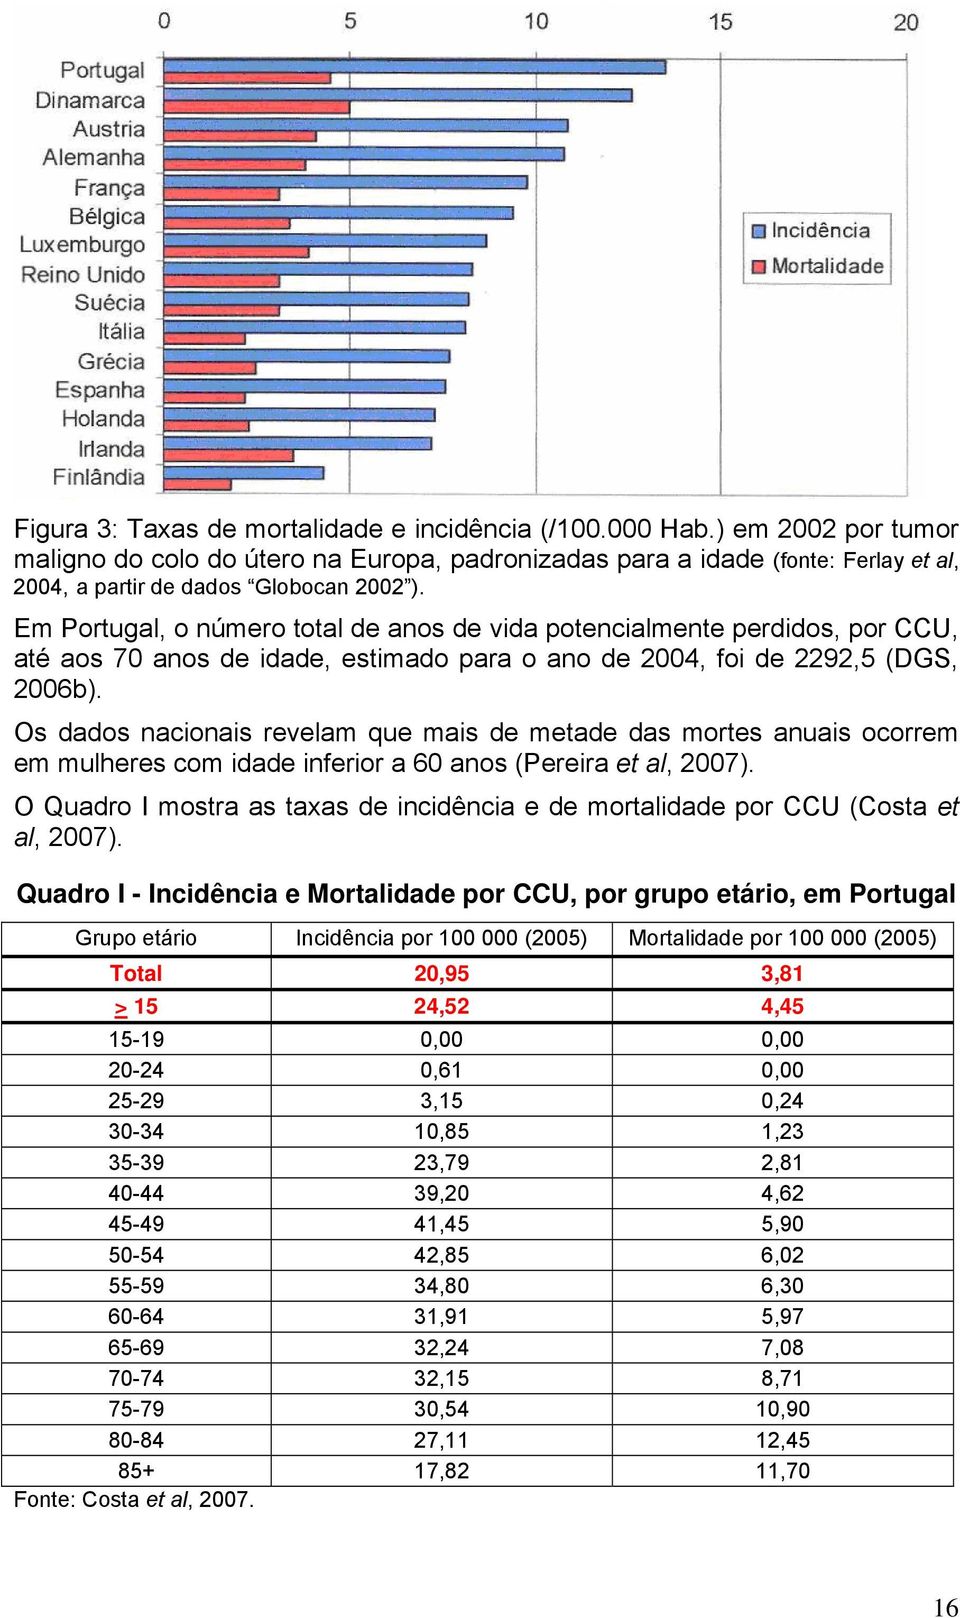 Em Portugal, o número total de anos de vida potencialmente perdidos, por CCU, até aos 70 anos de idade, estimado para o ano de 2004, foi de 2292,5 (DGS, 2006b).